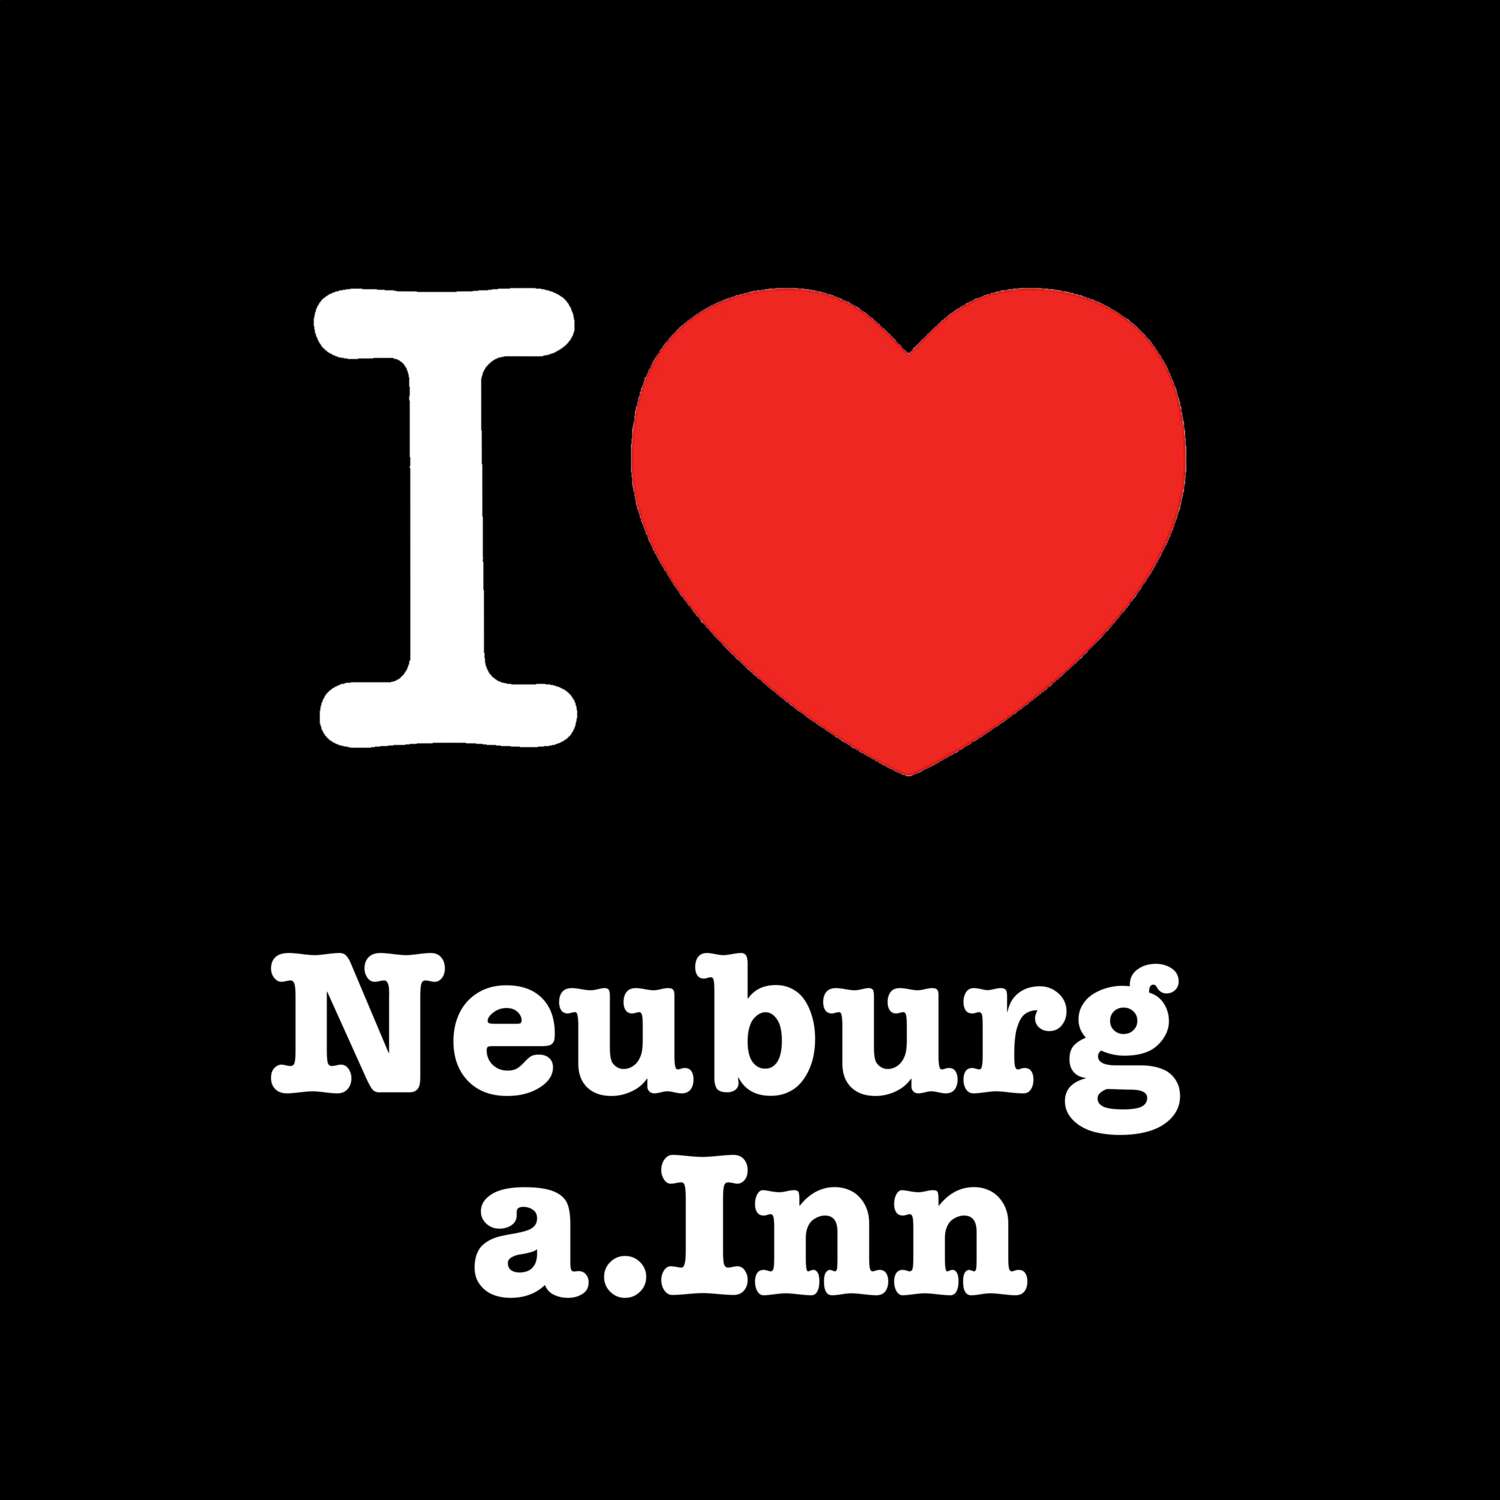 Neuburg a.Inn T-Shirt »I love«